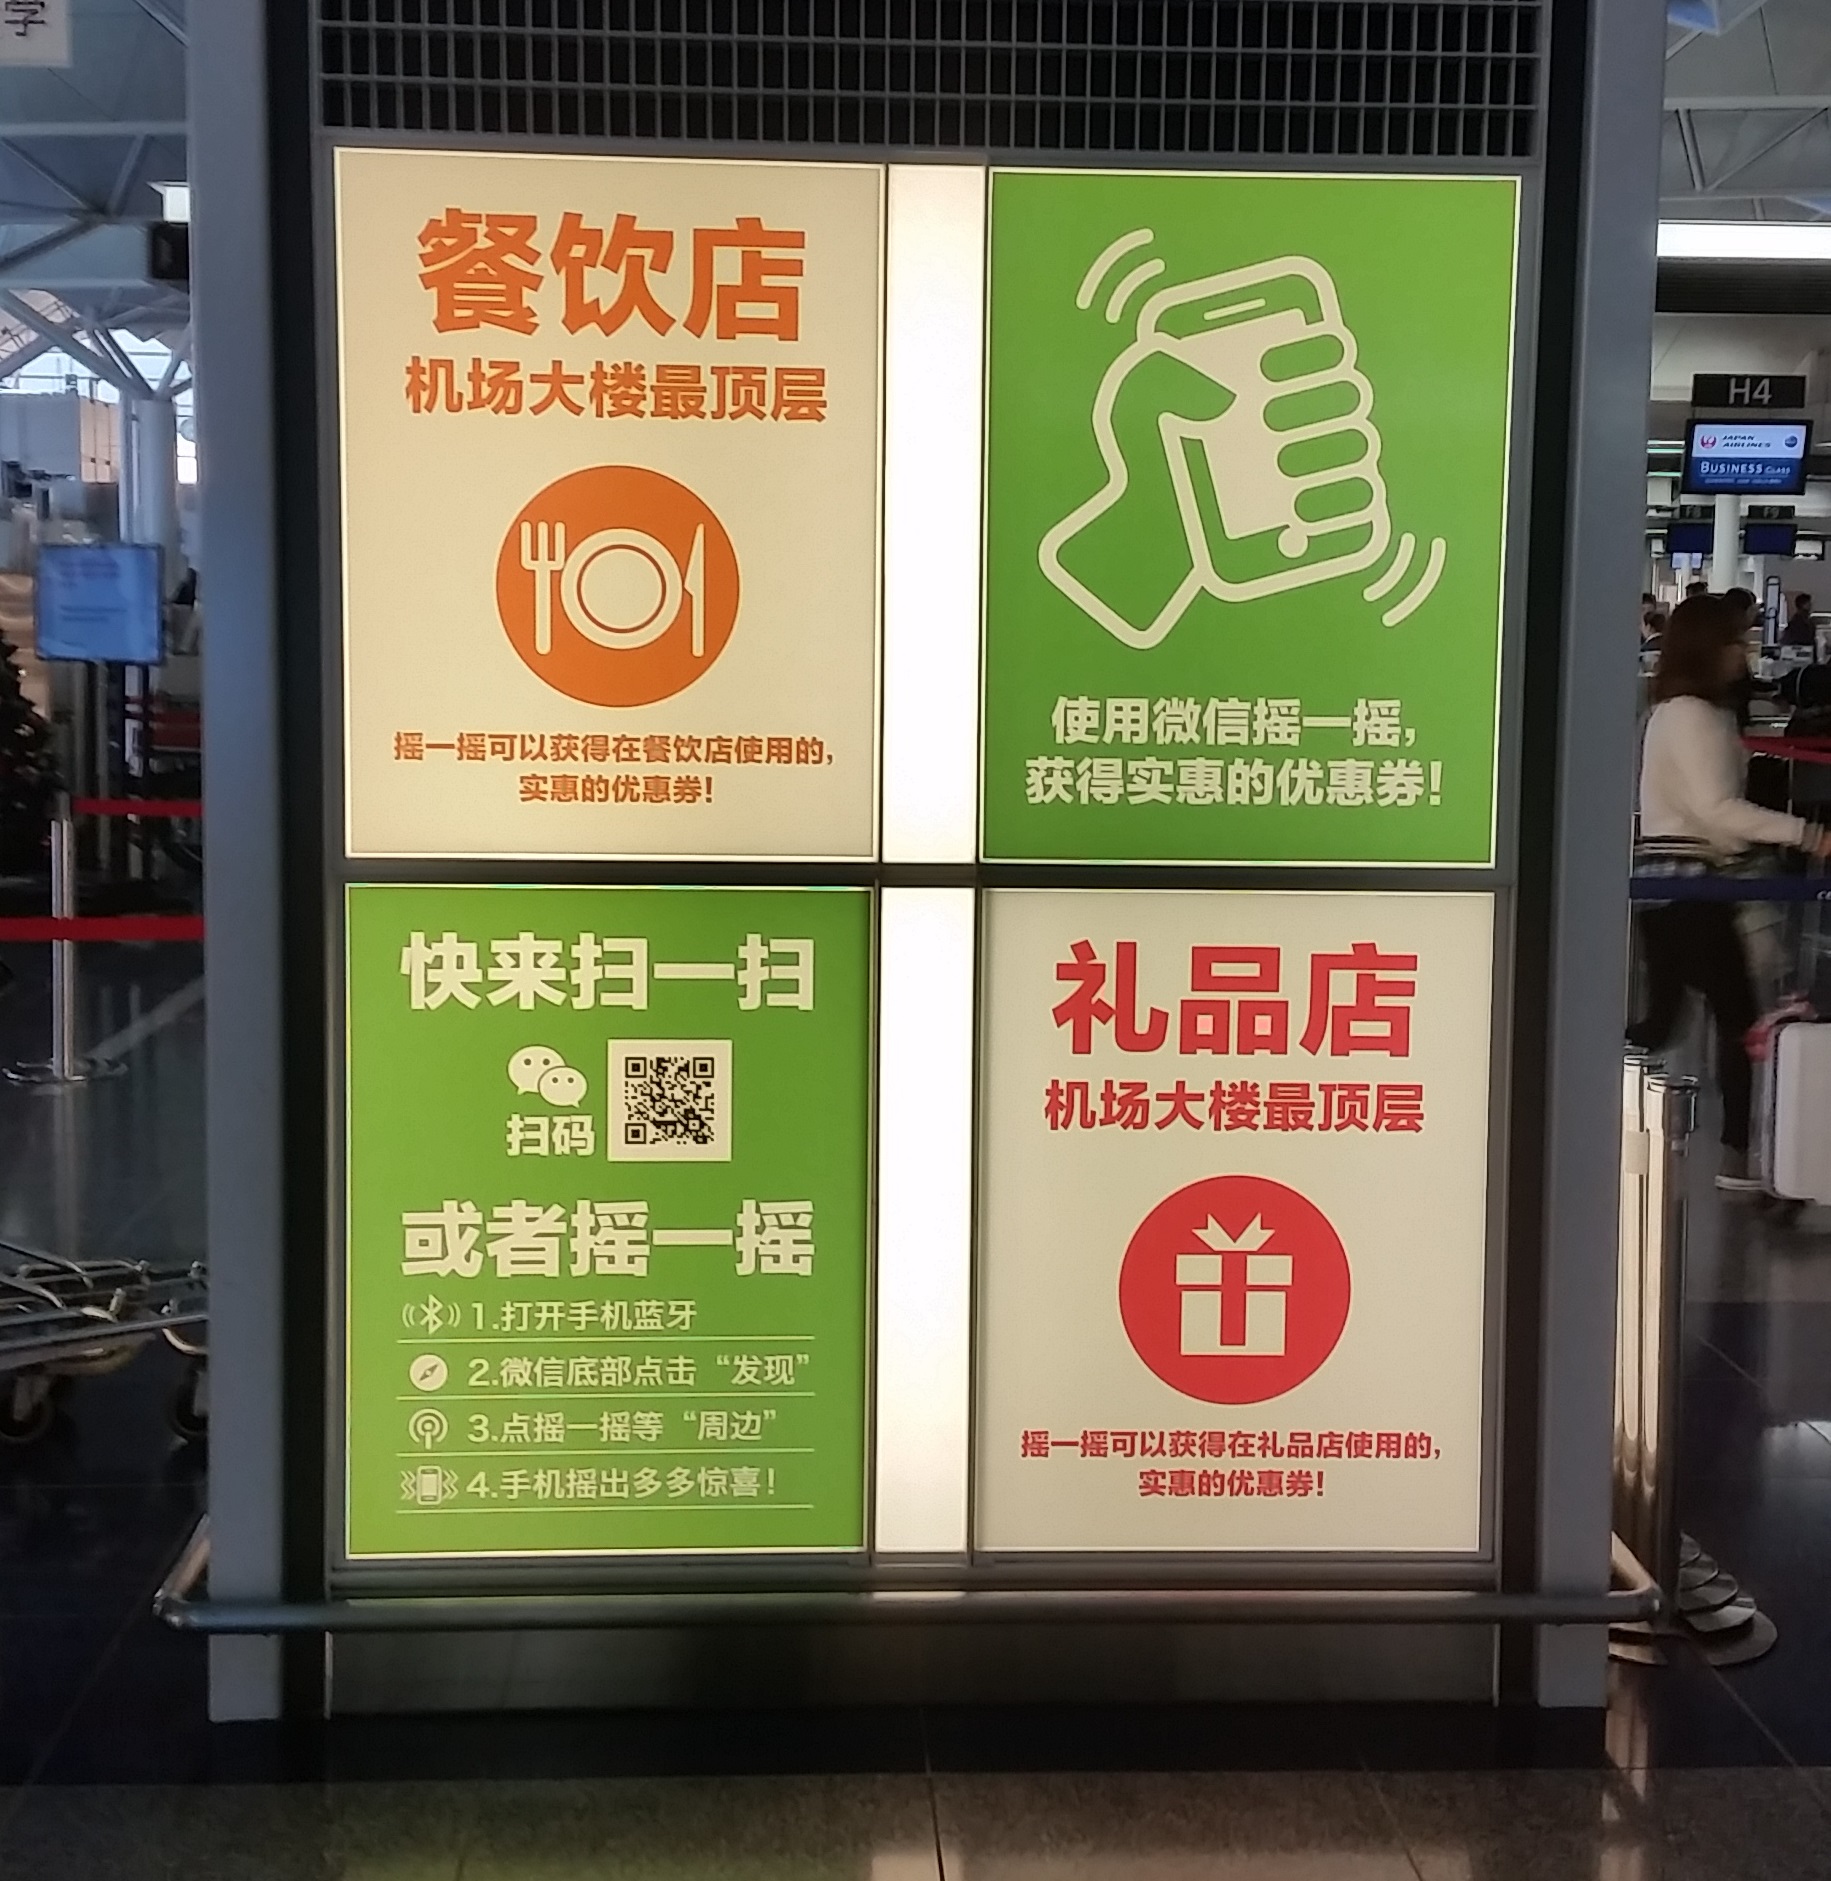 ウィマッチは中部国際空港向けにサービス提供